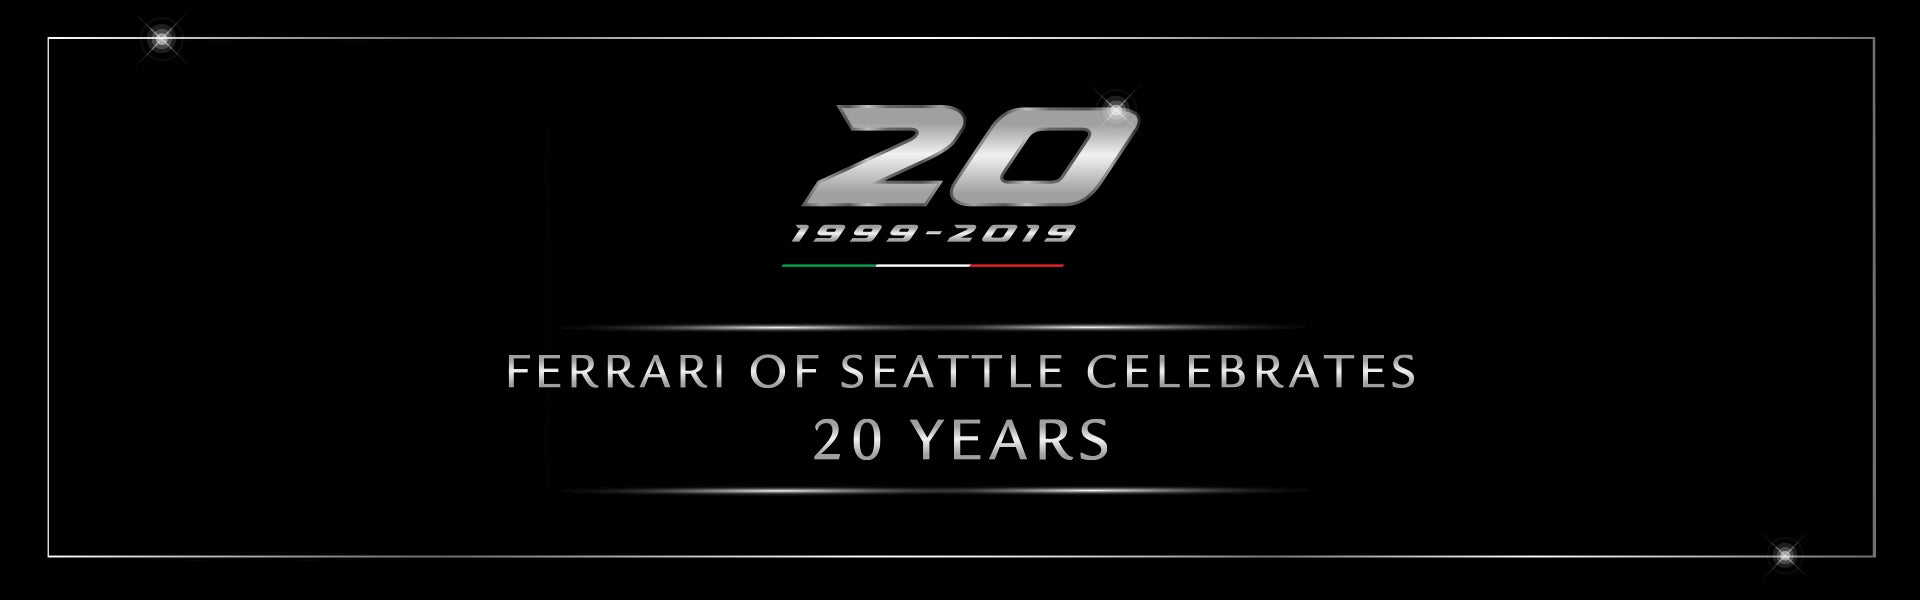 20 Years Anniversary at Ferrari of Seattle